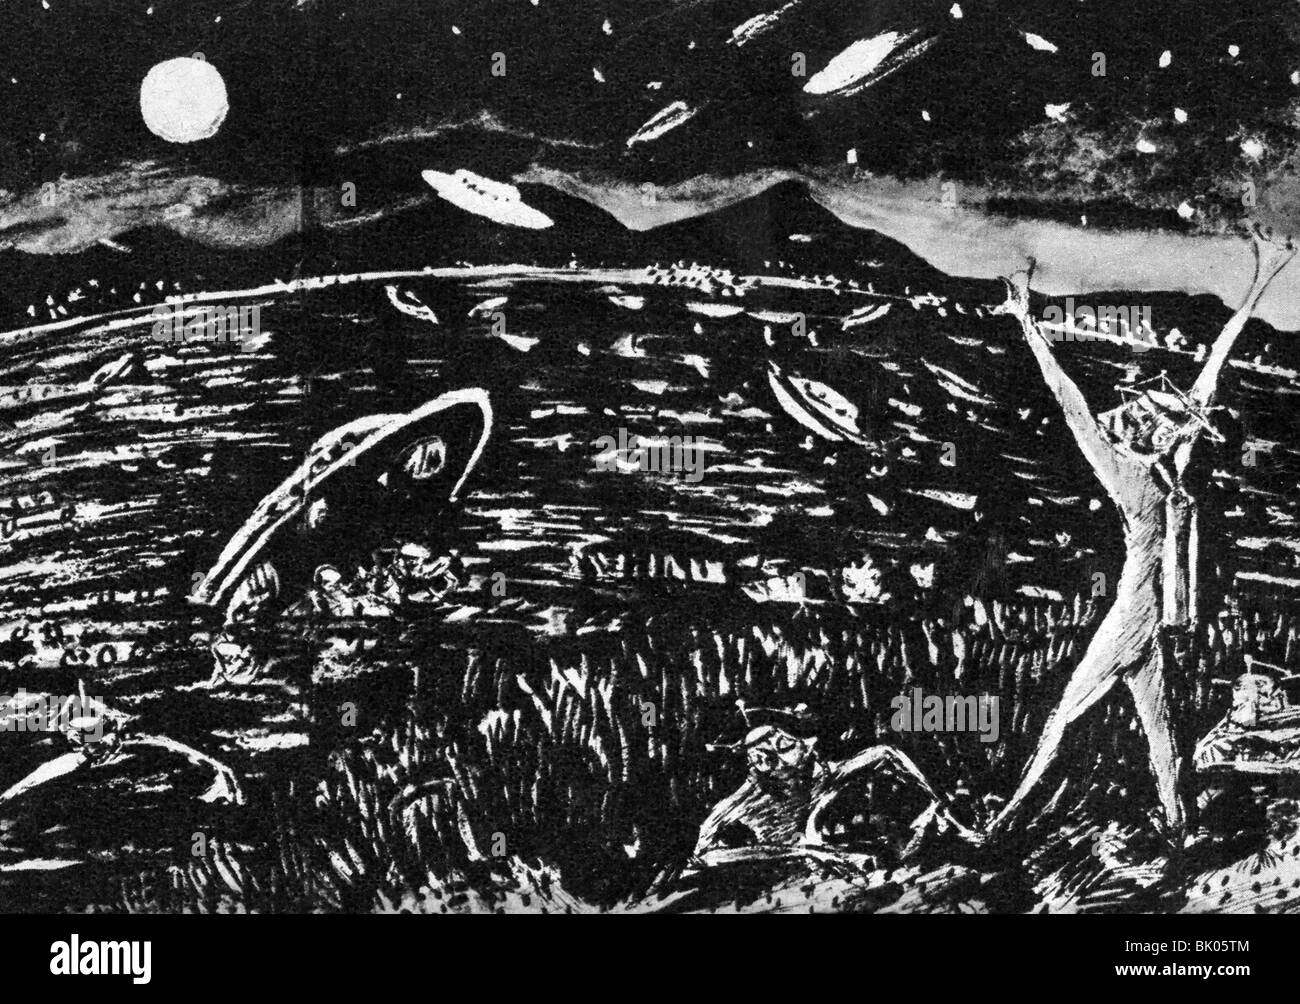 Astronautica, oggetto volante non identificato (UFO), cittadino Venere atterraggio in Giappone, illustrazione di Takendo Suzuki, 20th secolo, storico, storico, uomo, uomini, persone, figurazione dell'immaginazione, figurazioni dell'immaginazione, immaginazione, mente, fantasia, finzione, alieno, Foto Stock